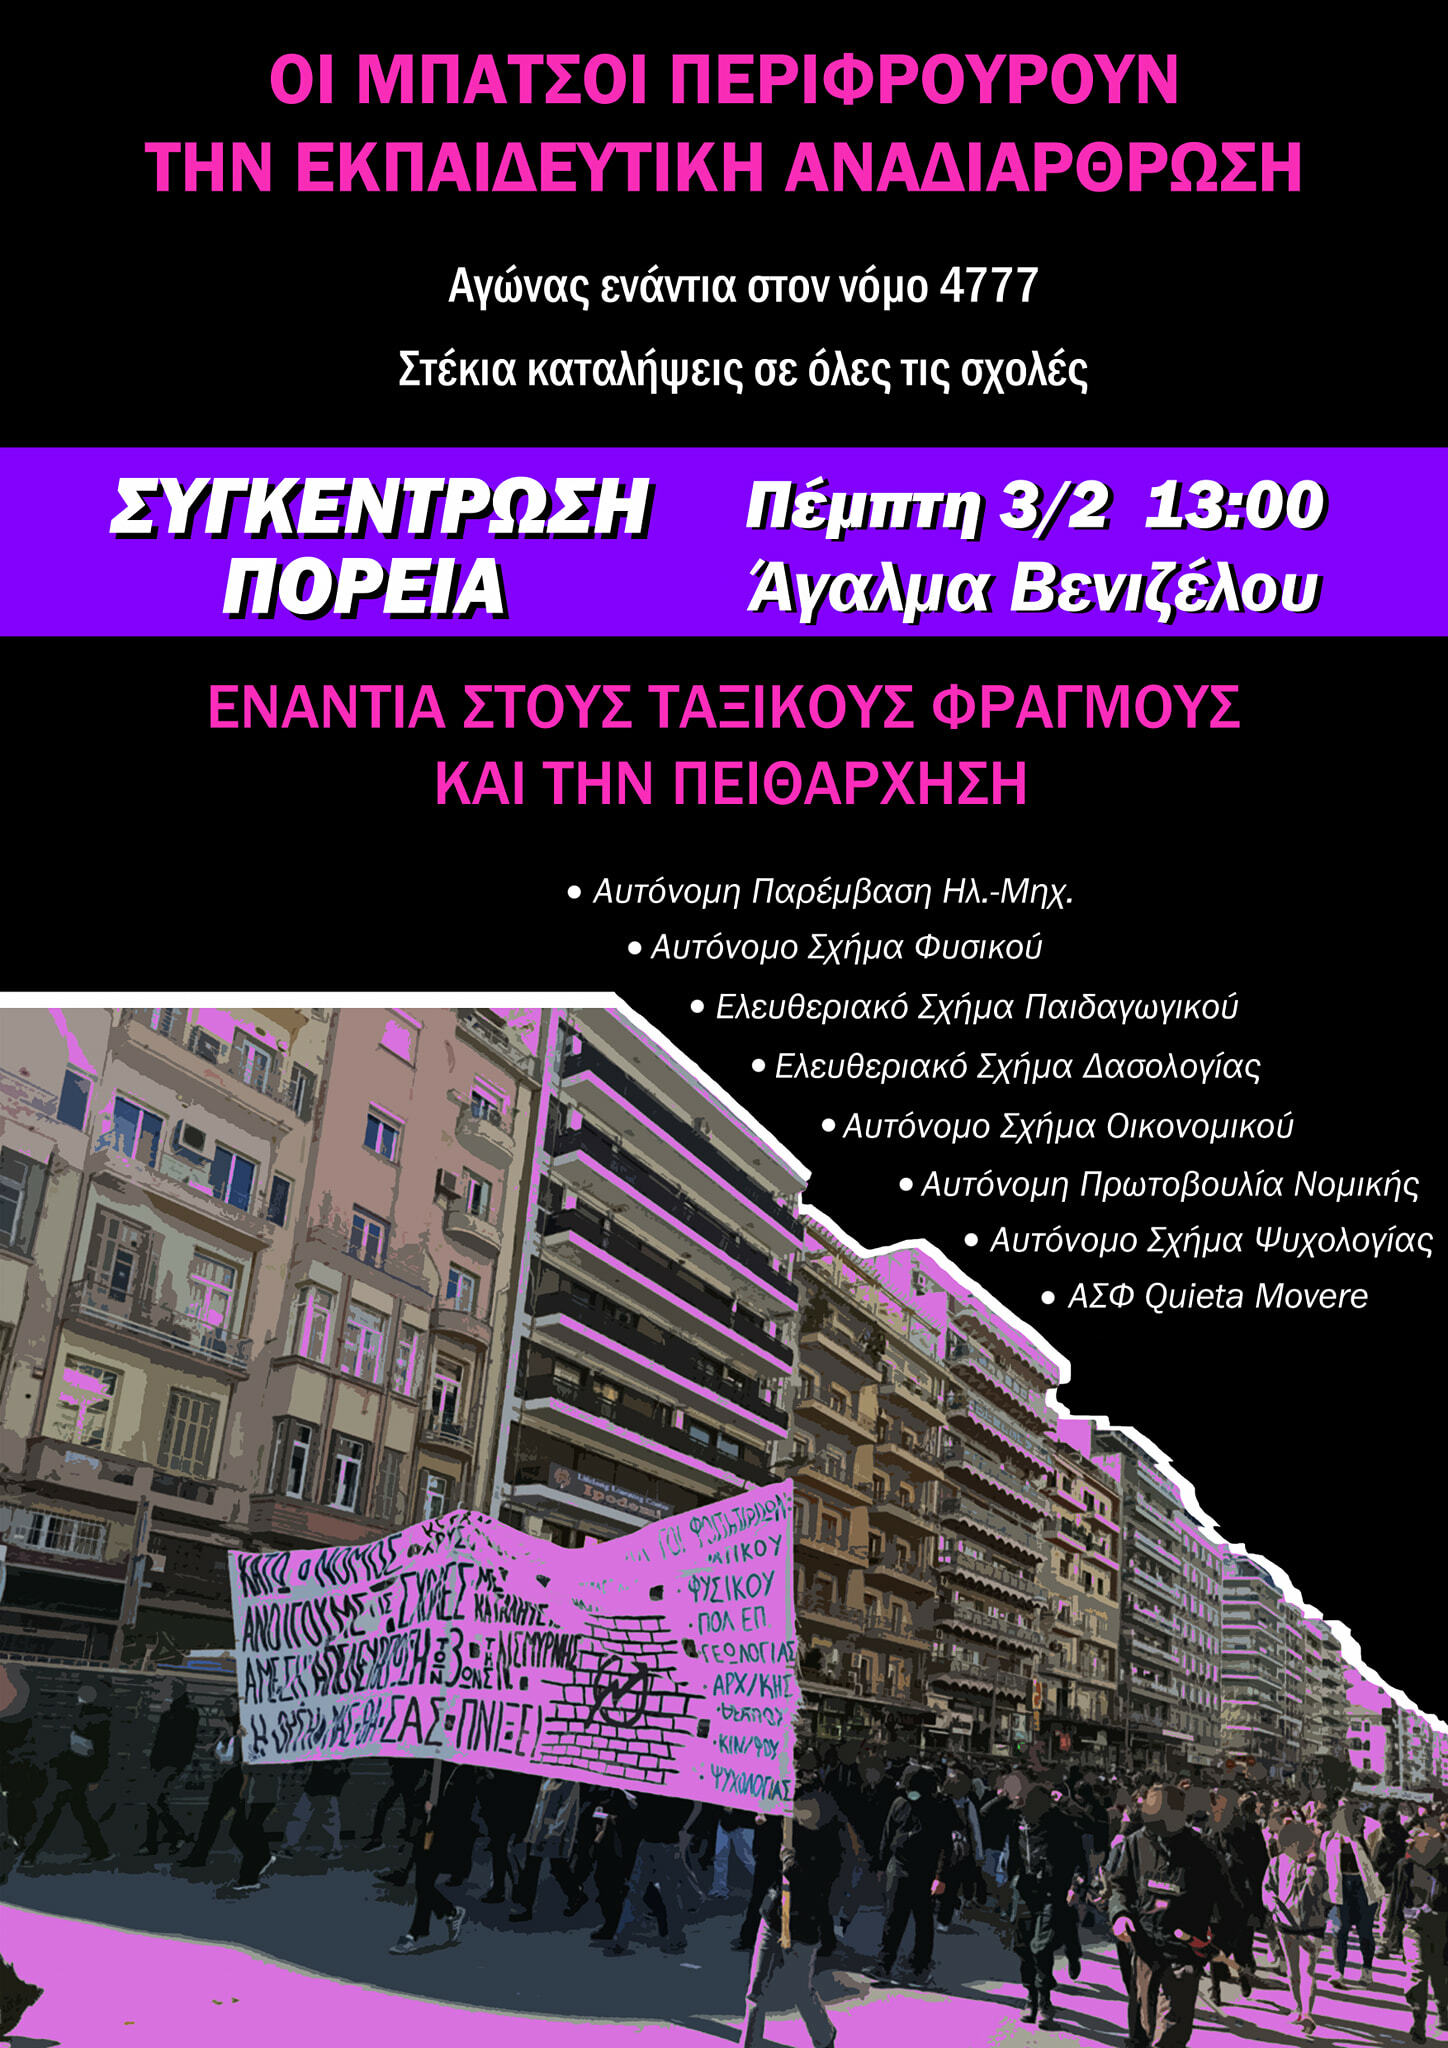 Θεσσαλονίκη | Πορεία ενάντια στην εκπαιδευτική αναδιάρθρωση (Πέμπτη 3/2, 13:00, Αγ. Βενιζέλου). Ενάντια στην εκπαιδευτική αναδιάρθρωση [...]